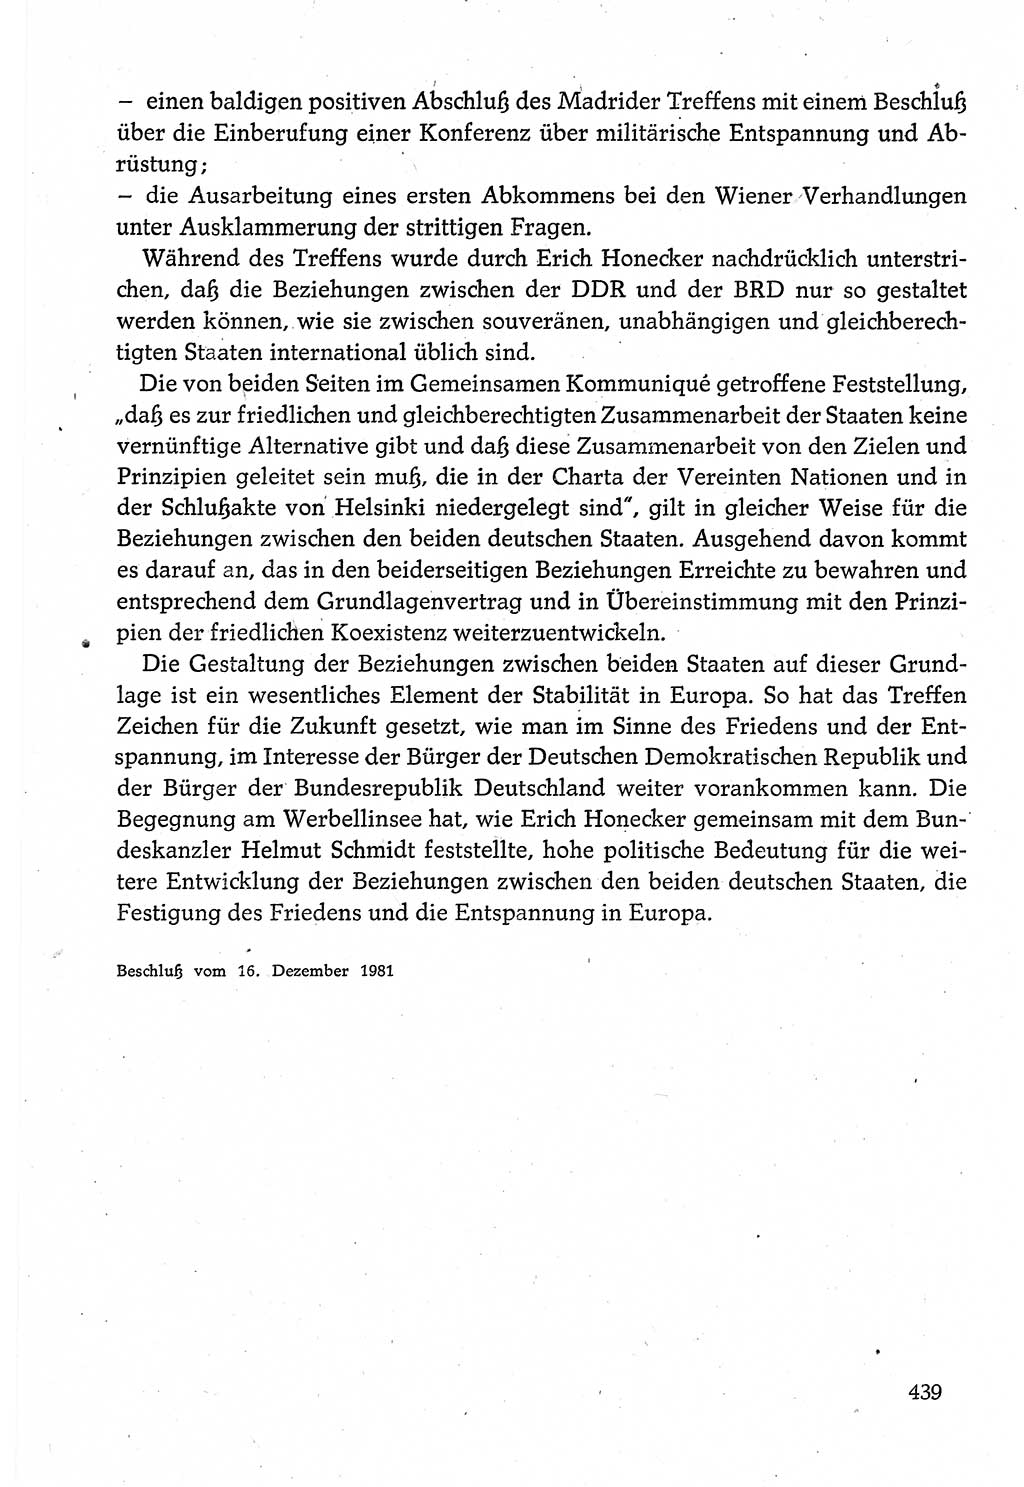 Dokumente der Sozialistischen Einheitspartei Deutschlands (SED) [Deutsche Demokratische Republik (DDR)] 1980-1981, Seite 439 (Dok. SED DDR 1980-1981, S. 439)